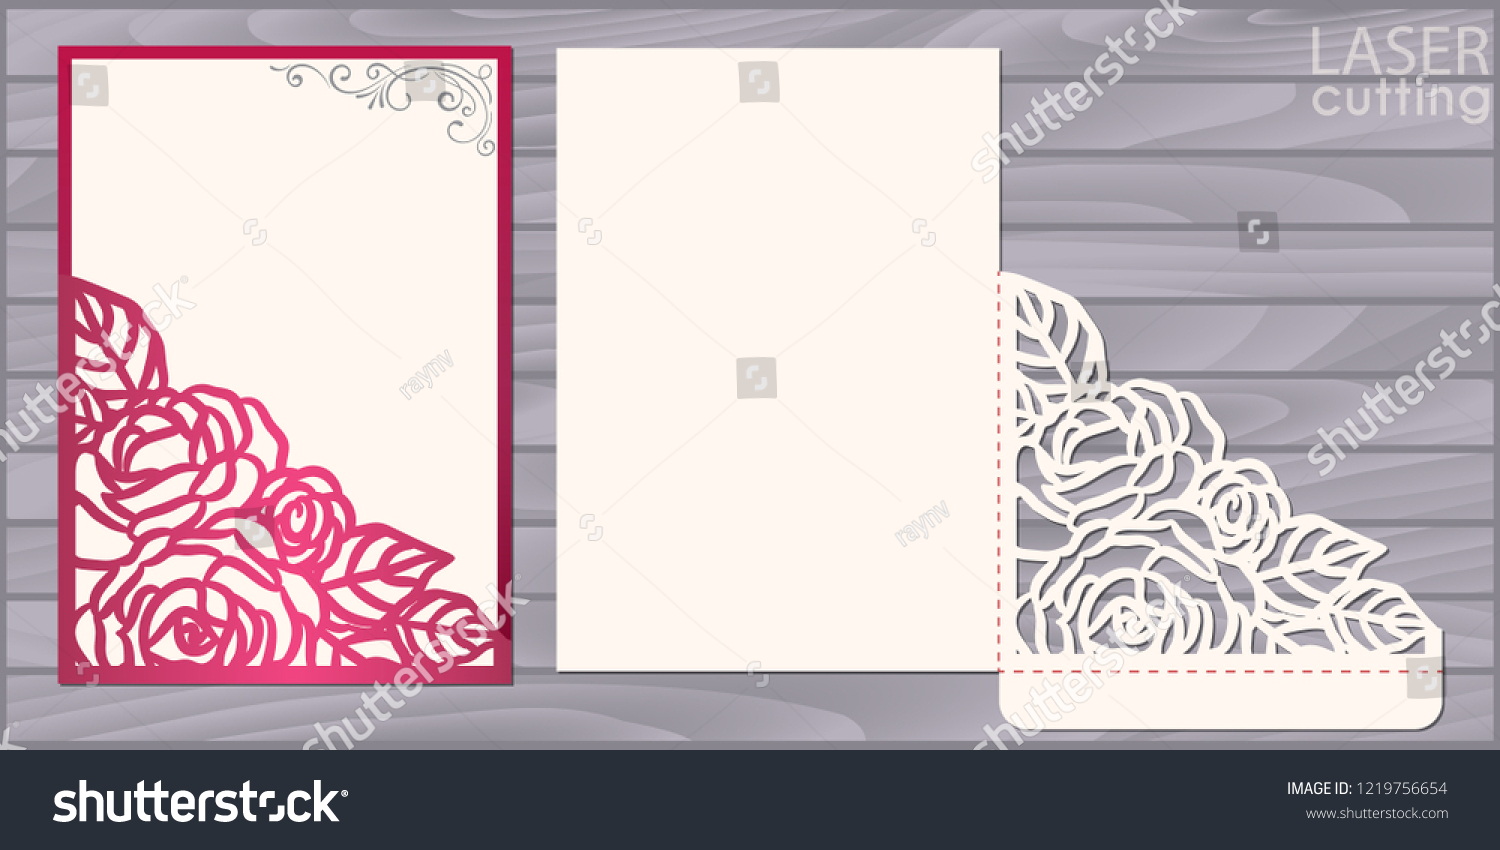 SVG of Die laser cut wedding card vector template. Invitation pocket envelope with lace corner with roses pattern. Wedding lace invitation mockup. svg